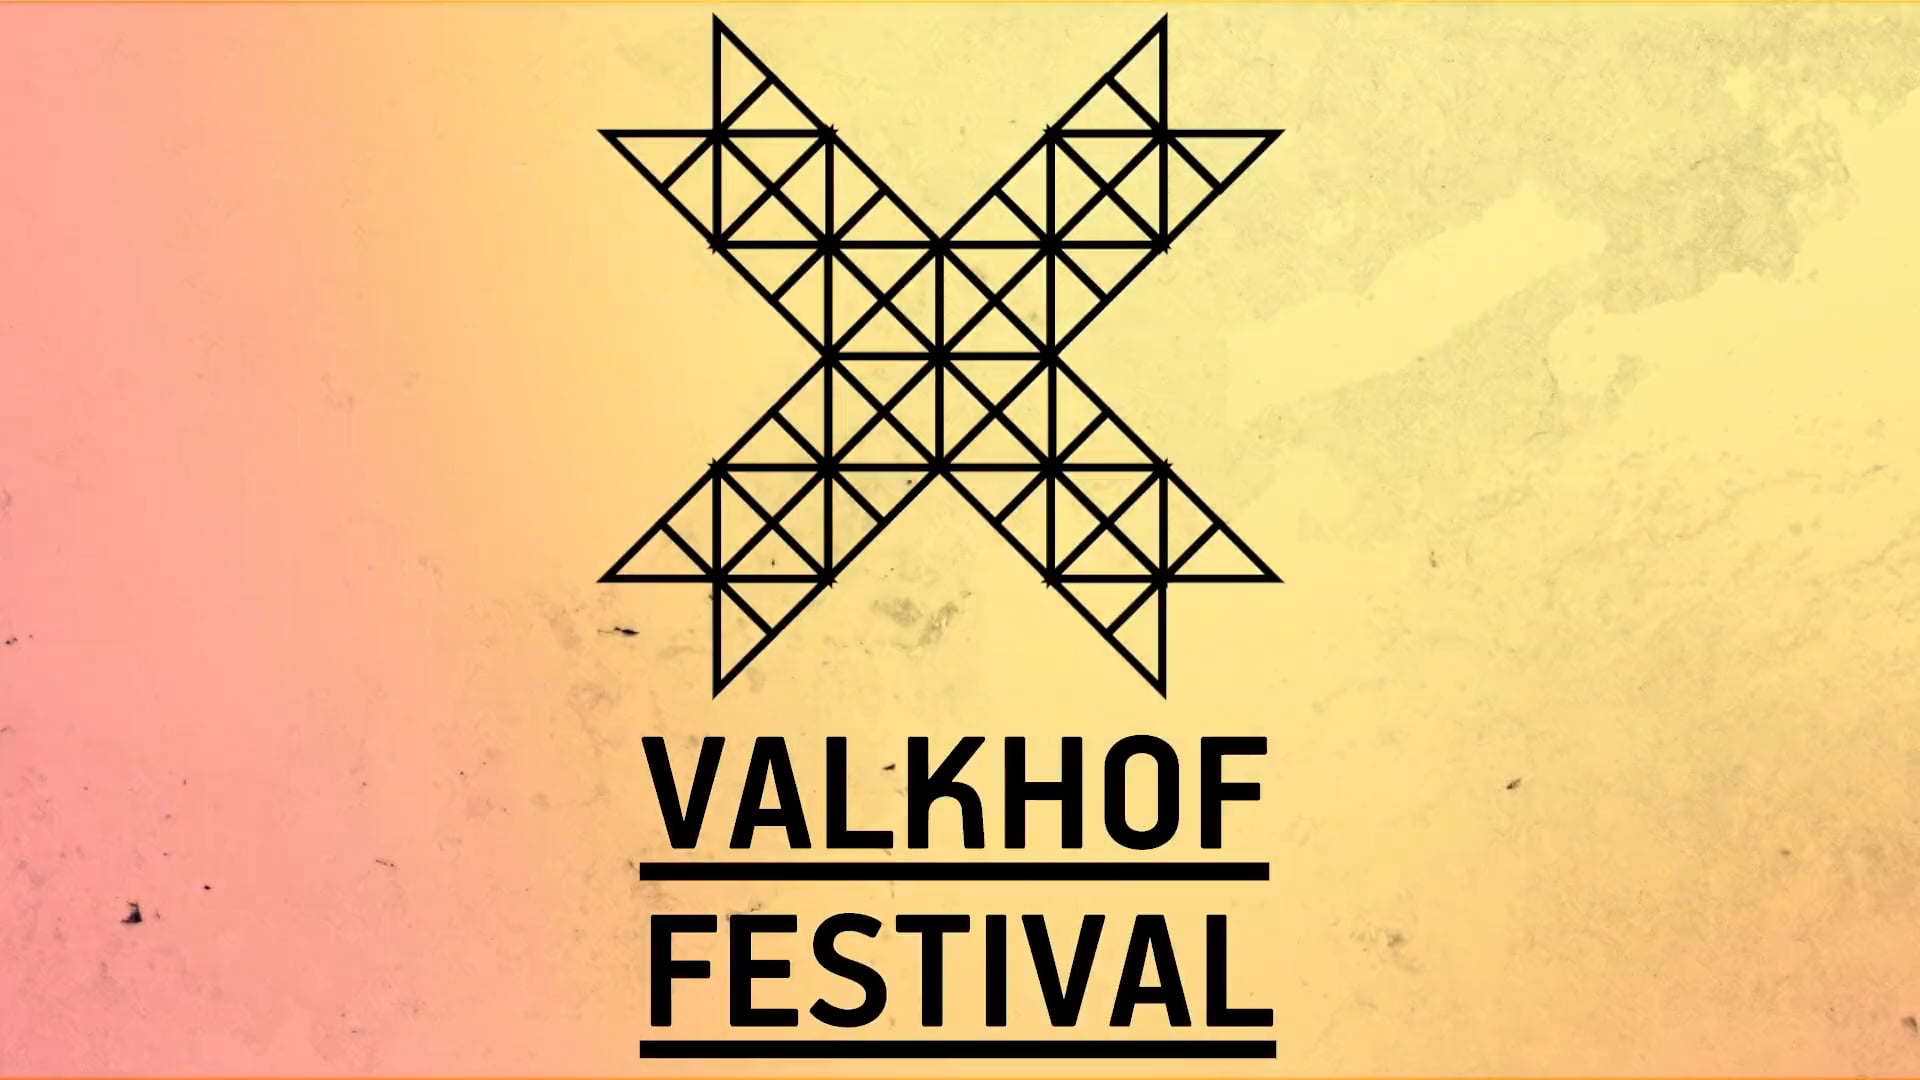 Valkhof Festival 2017 || Rocks at Night!